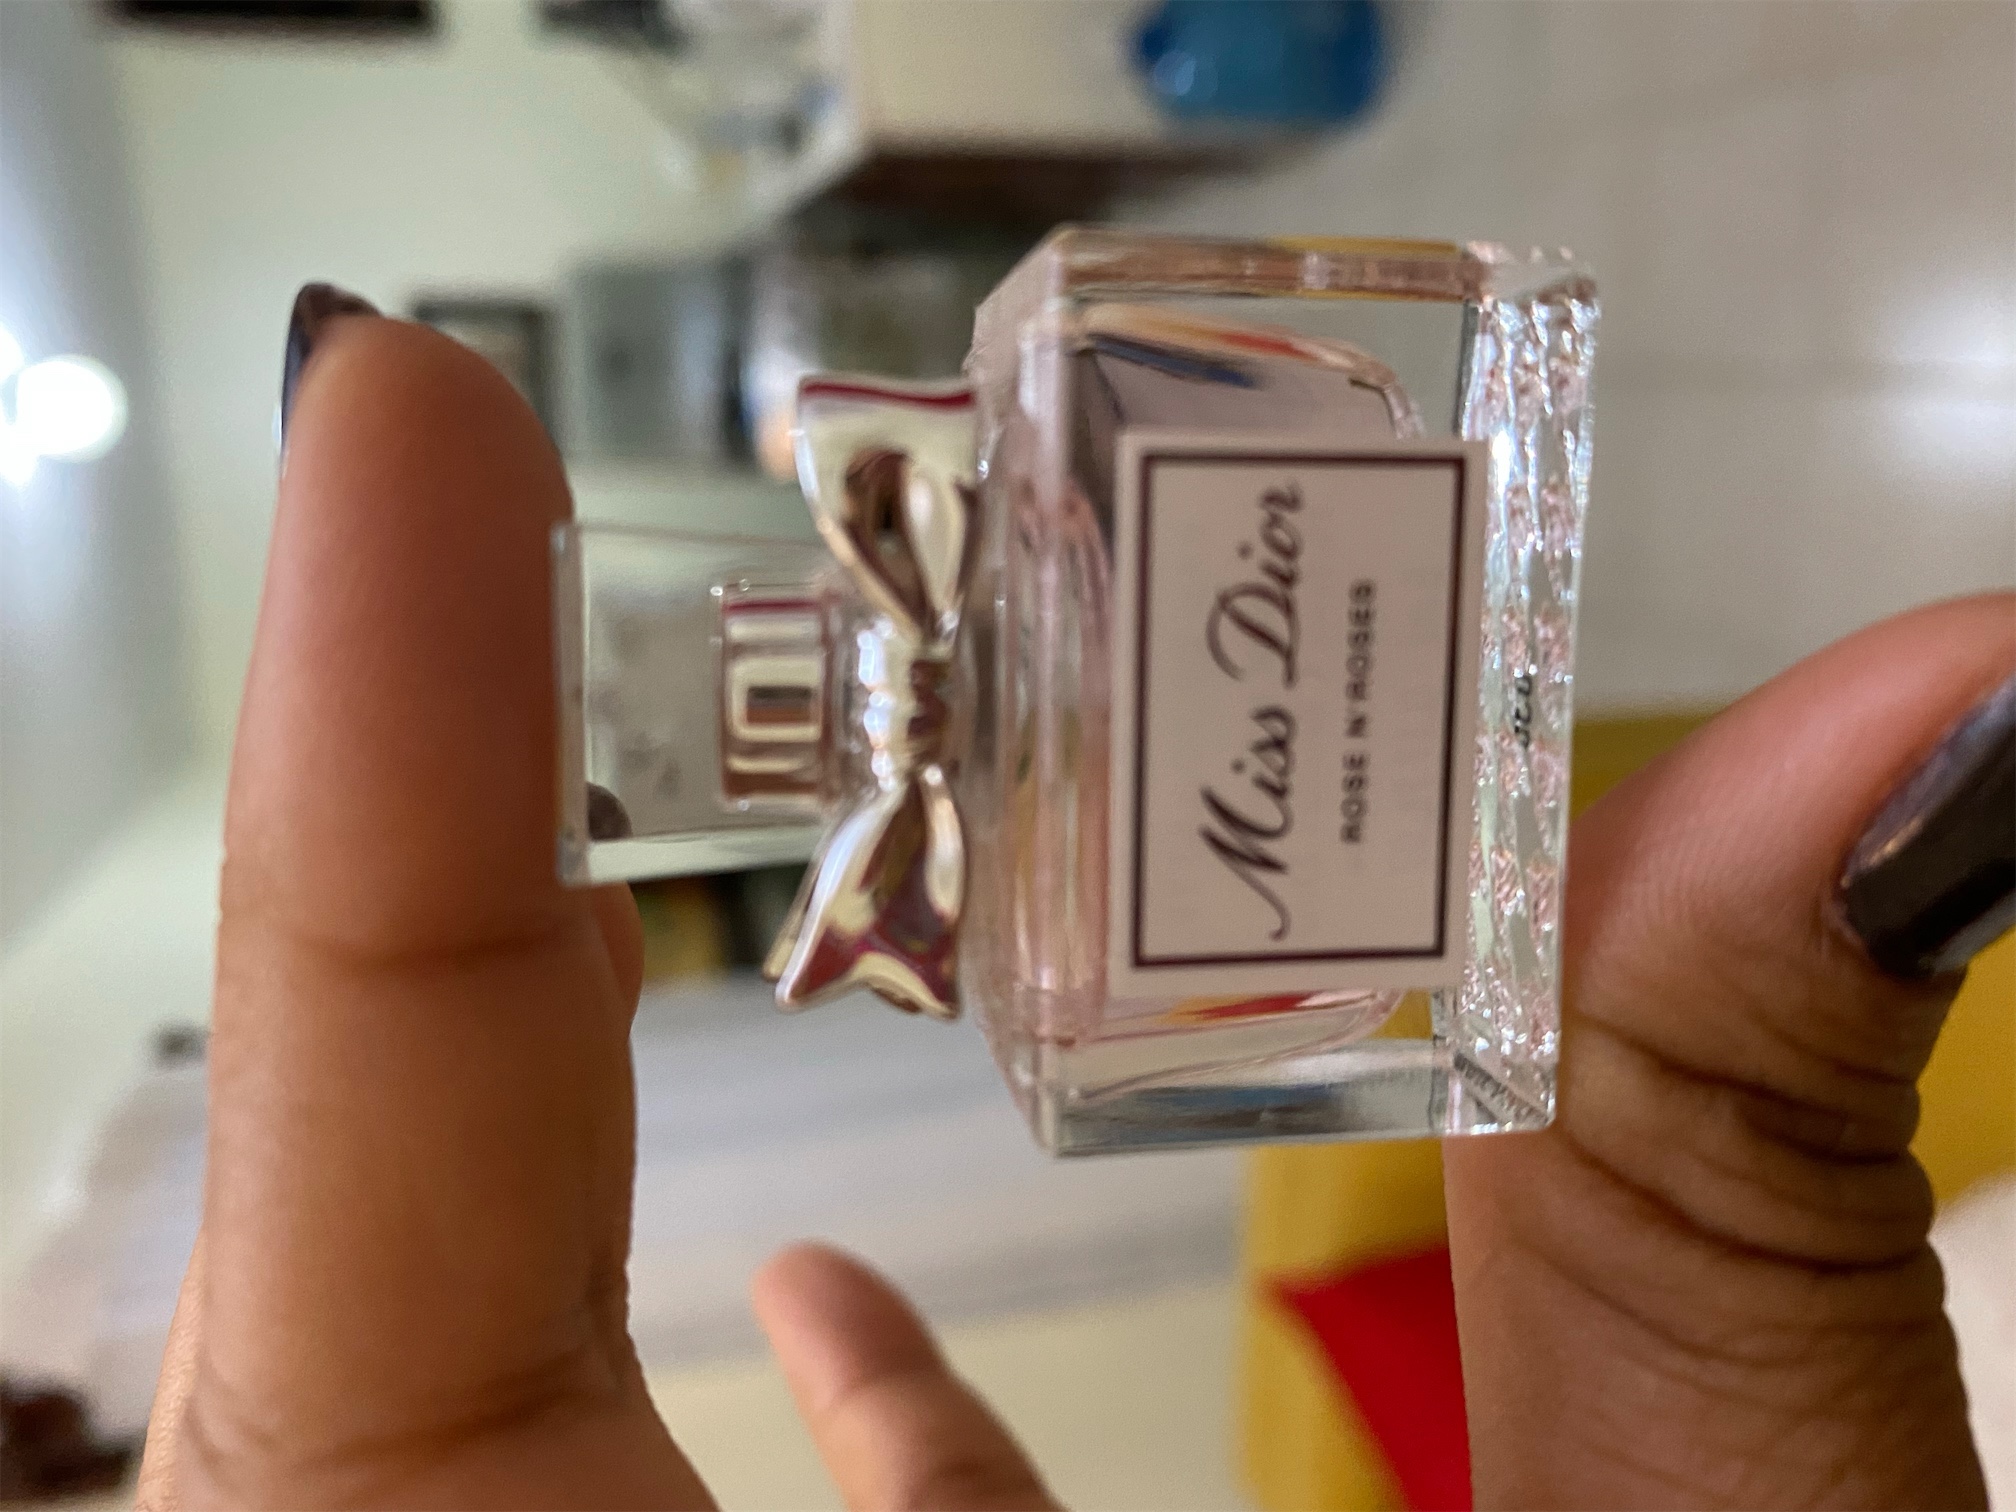 salud y belleza - Perfume miss Dior 4